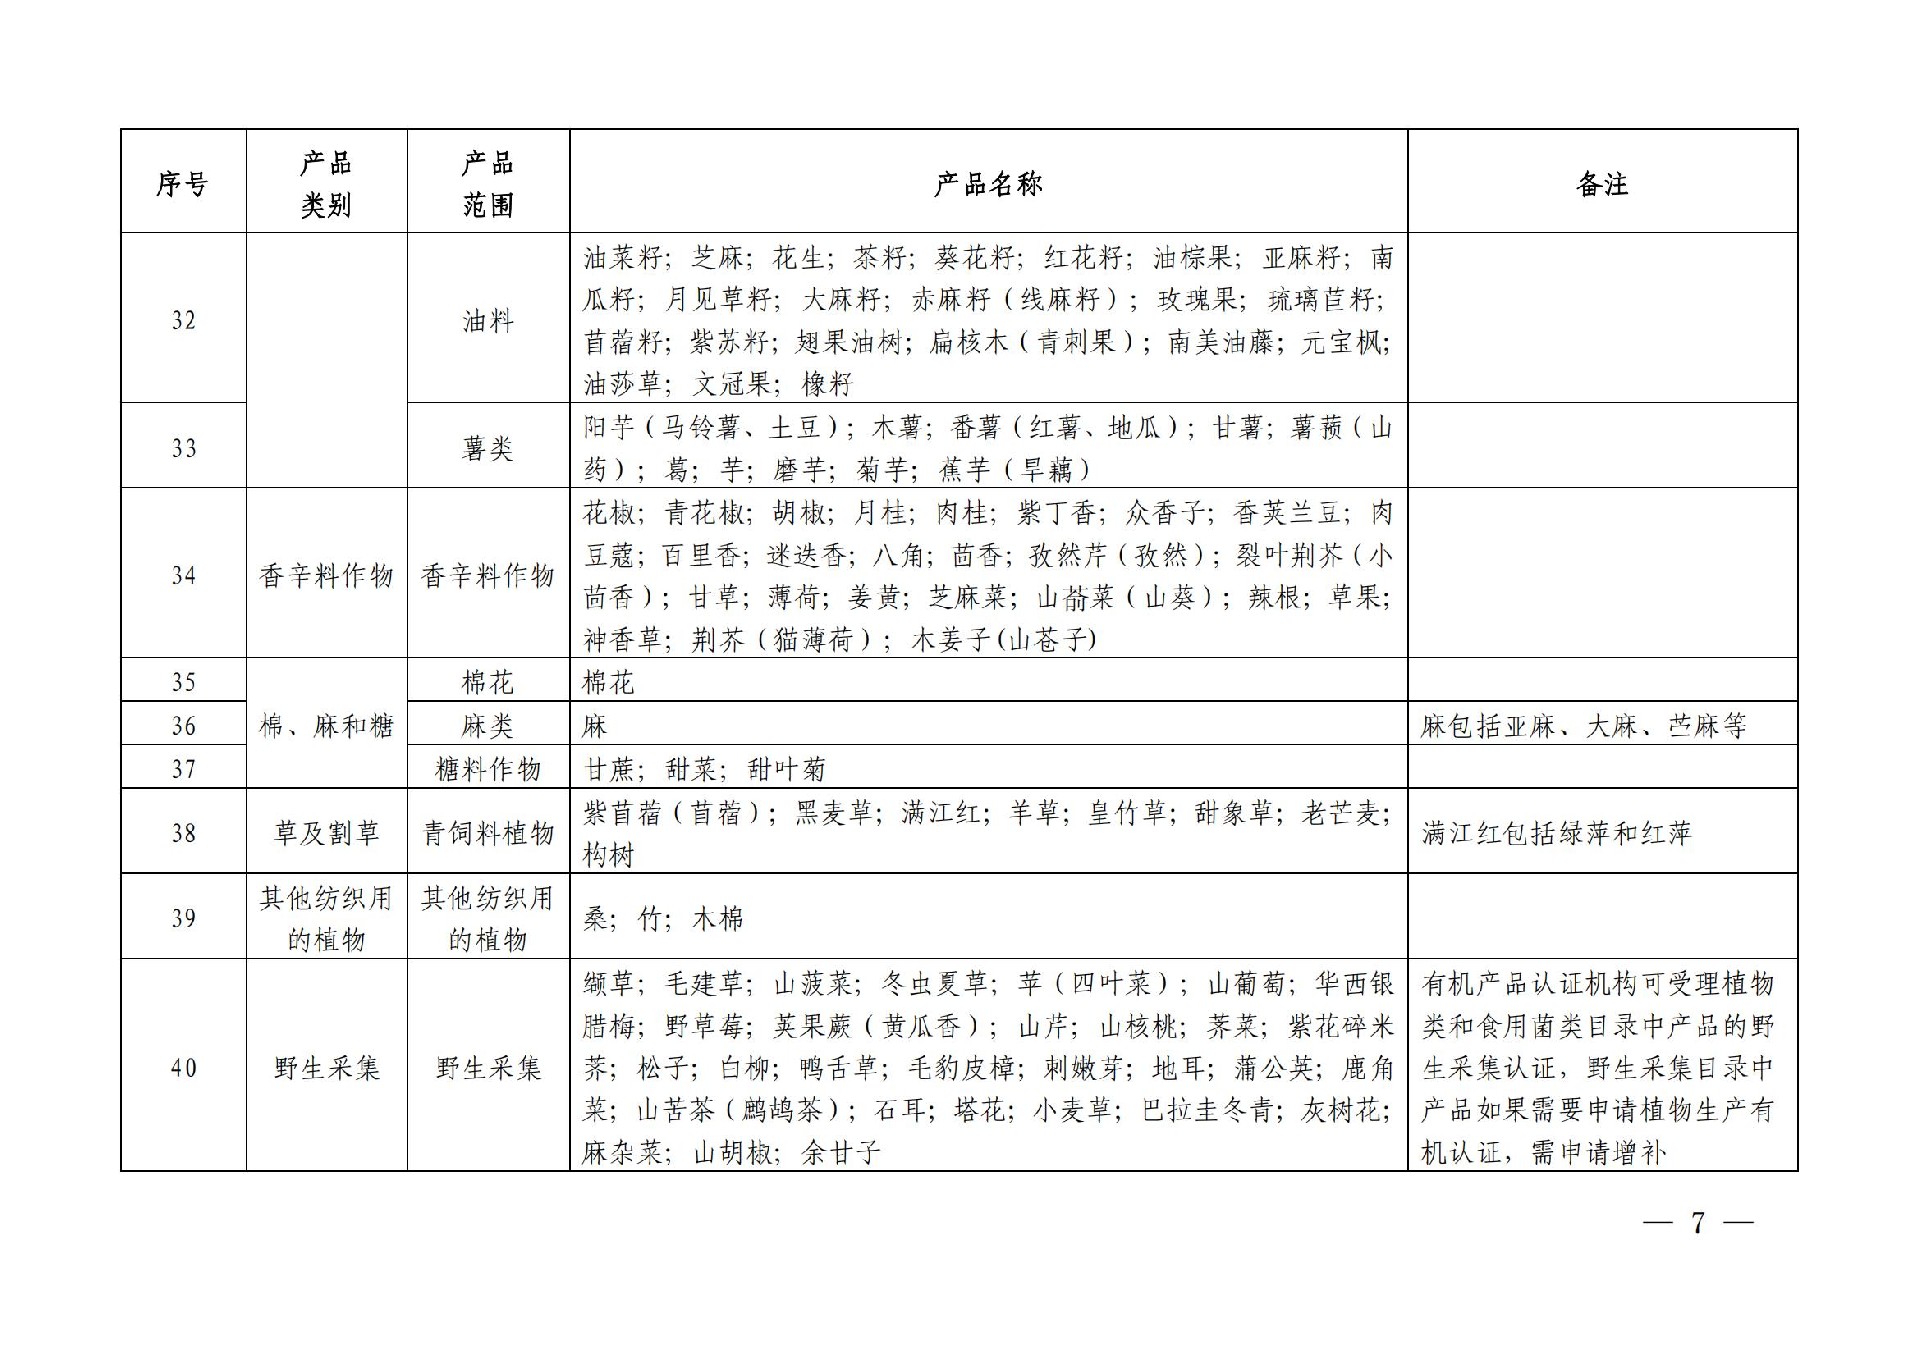 有机产品认证目录【认监委2019年第22号公告】(1)_06.jpg